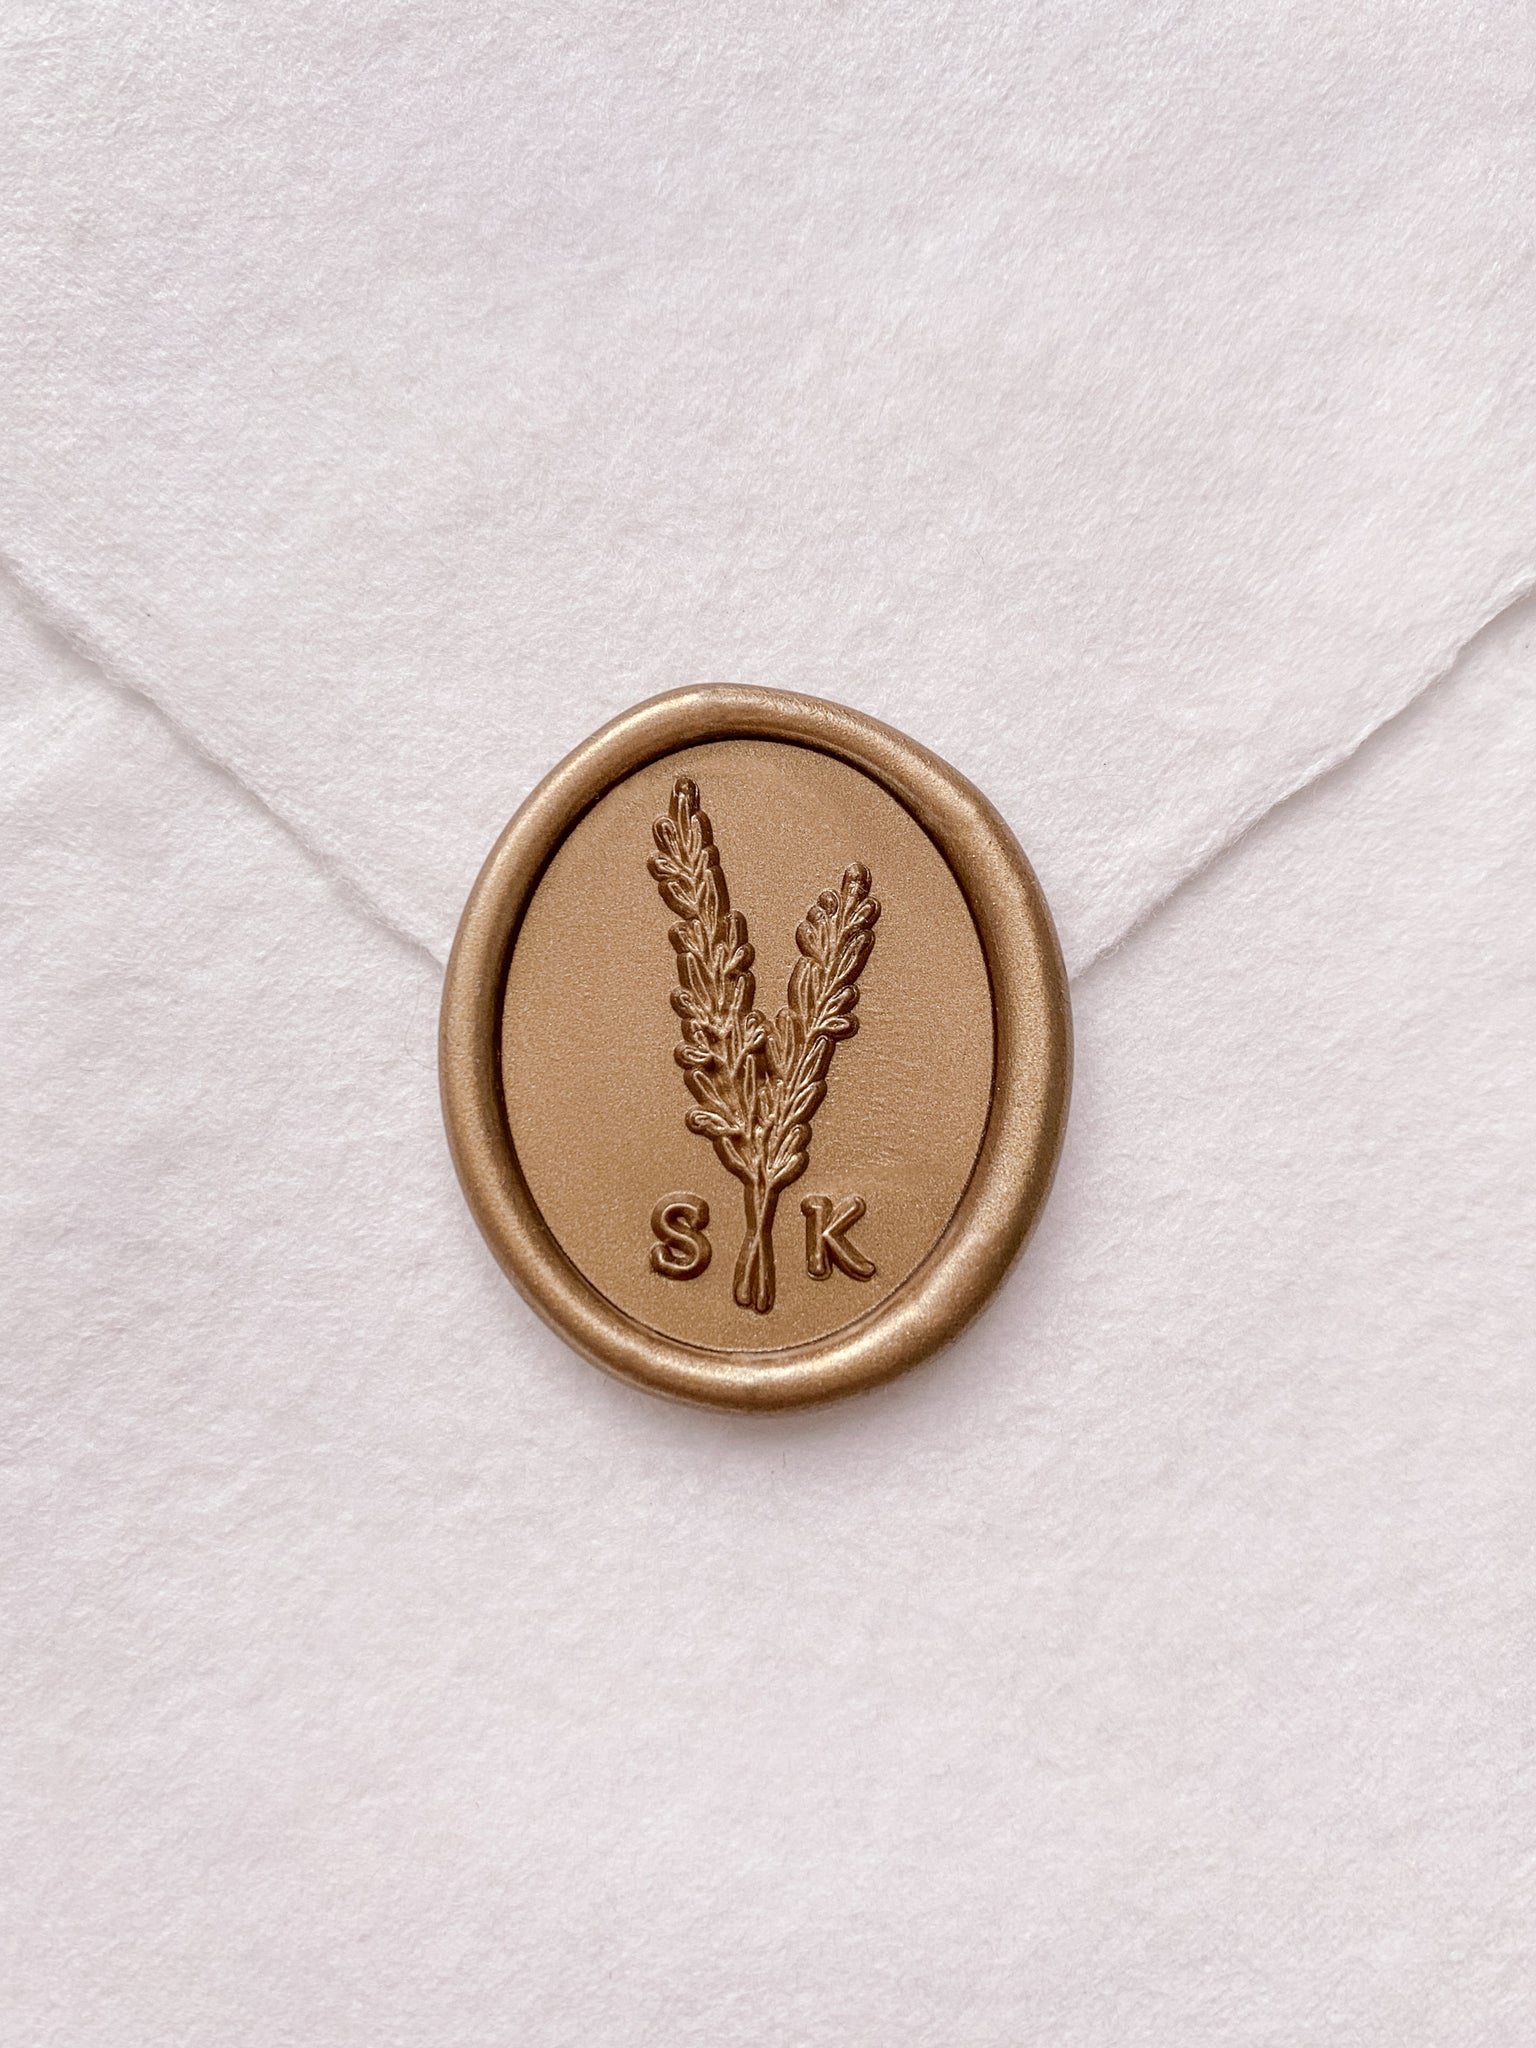 Rosemary leaf monogram gold custom wax seal on beige handmade paper envelope